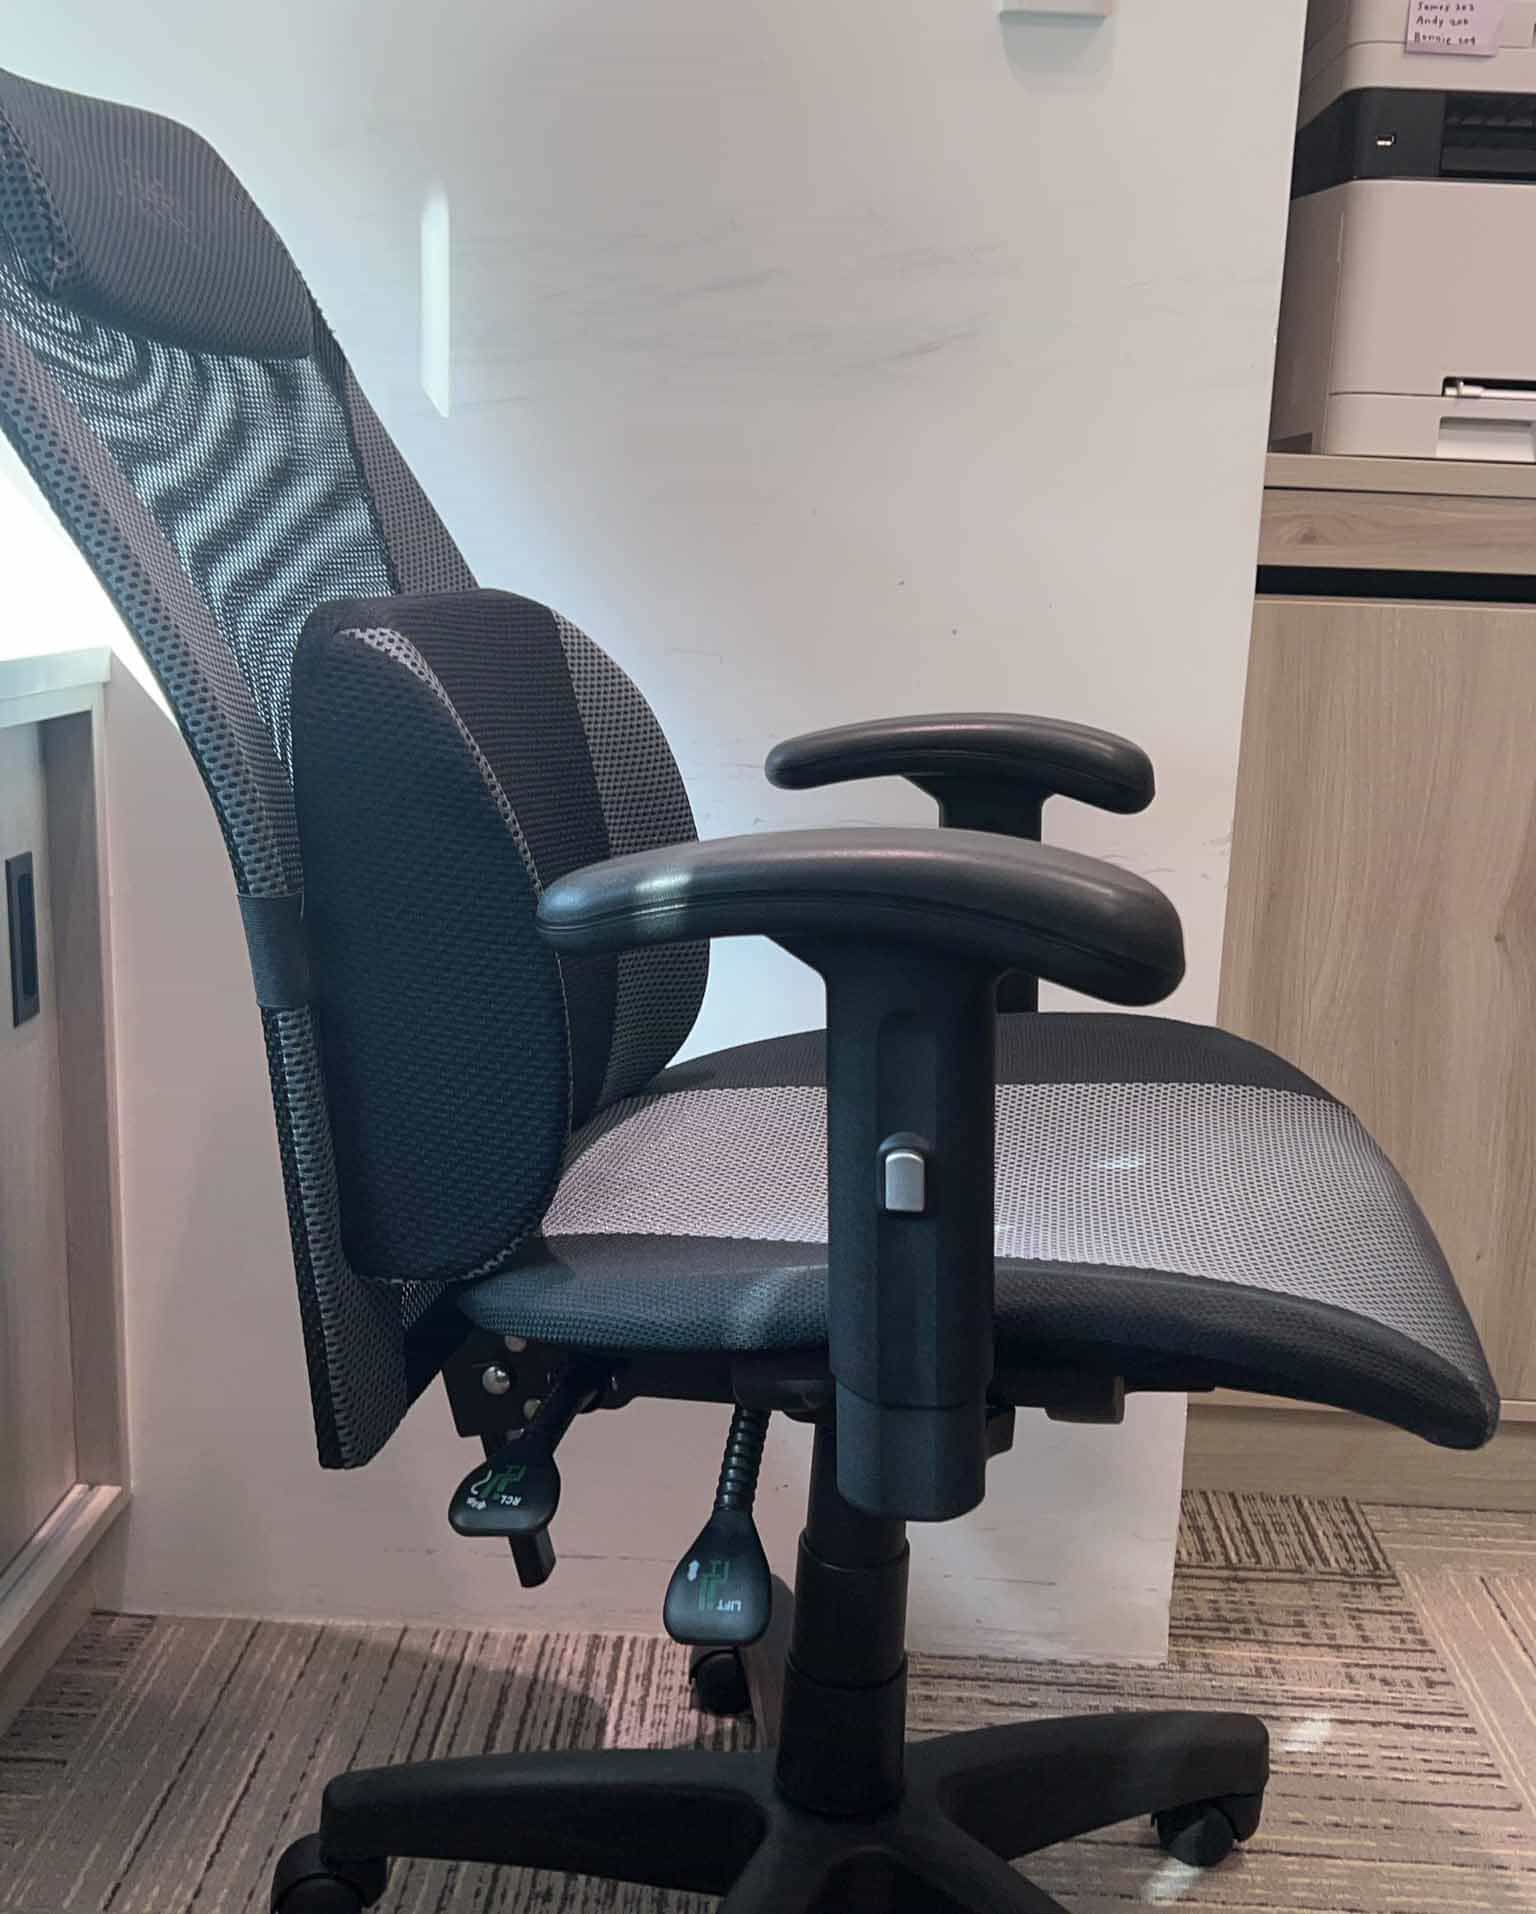 電腦椅椅背無法回正